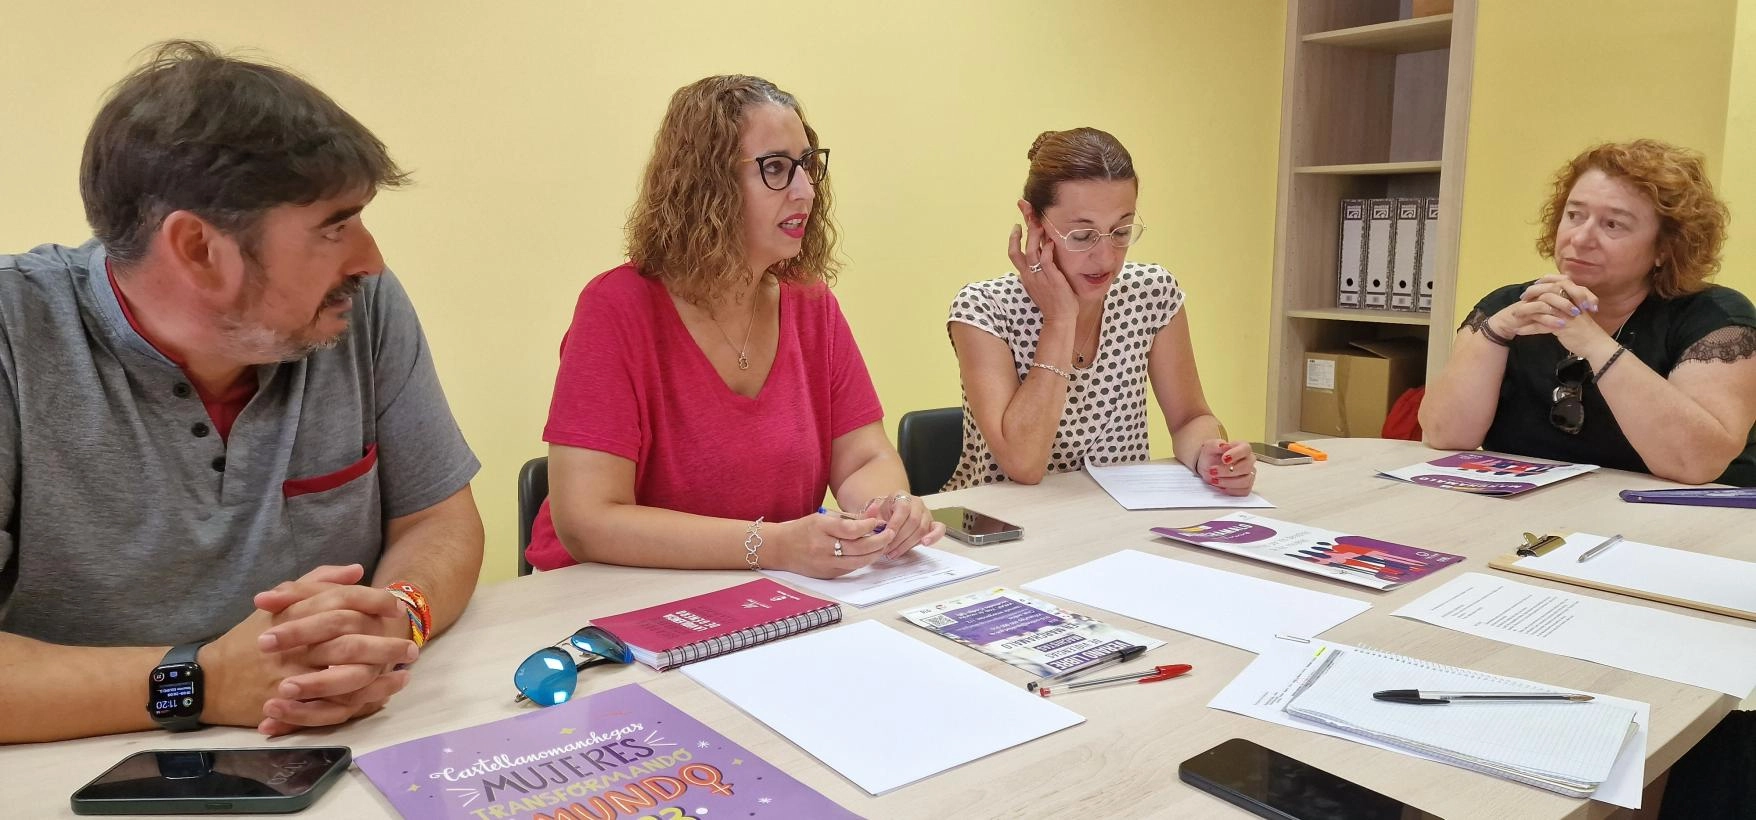 Imagen del artículo Castilla-La Mancha cuenta con 87 centros de la mujer en los que se atiende a 23.000 mujeres al año, con una media de 110.000 consultas